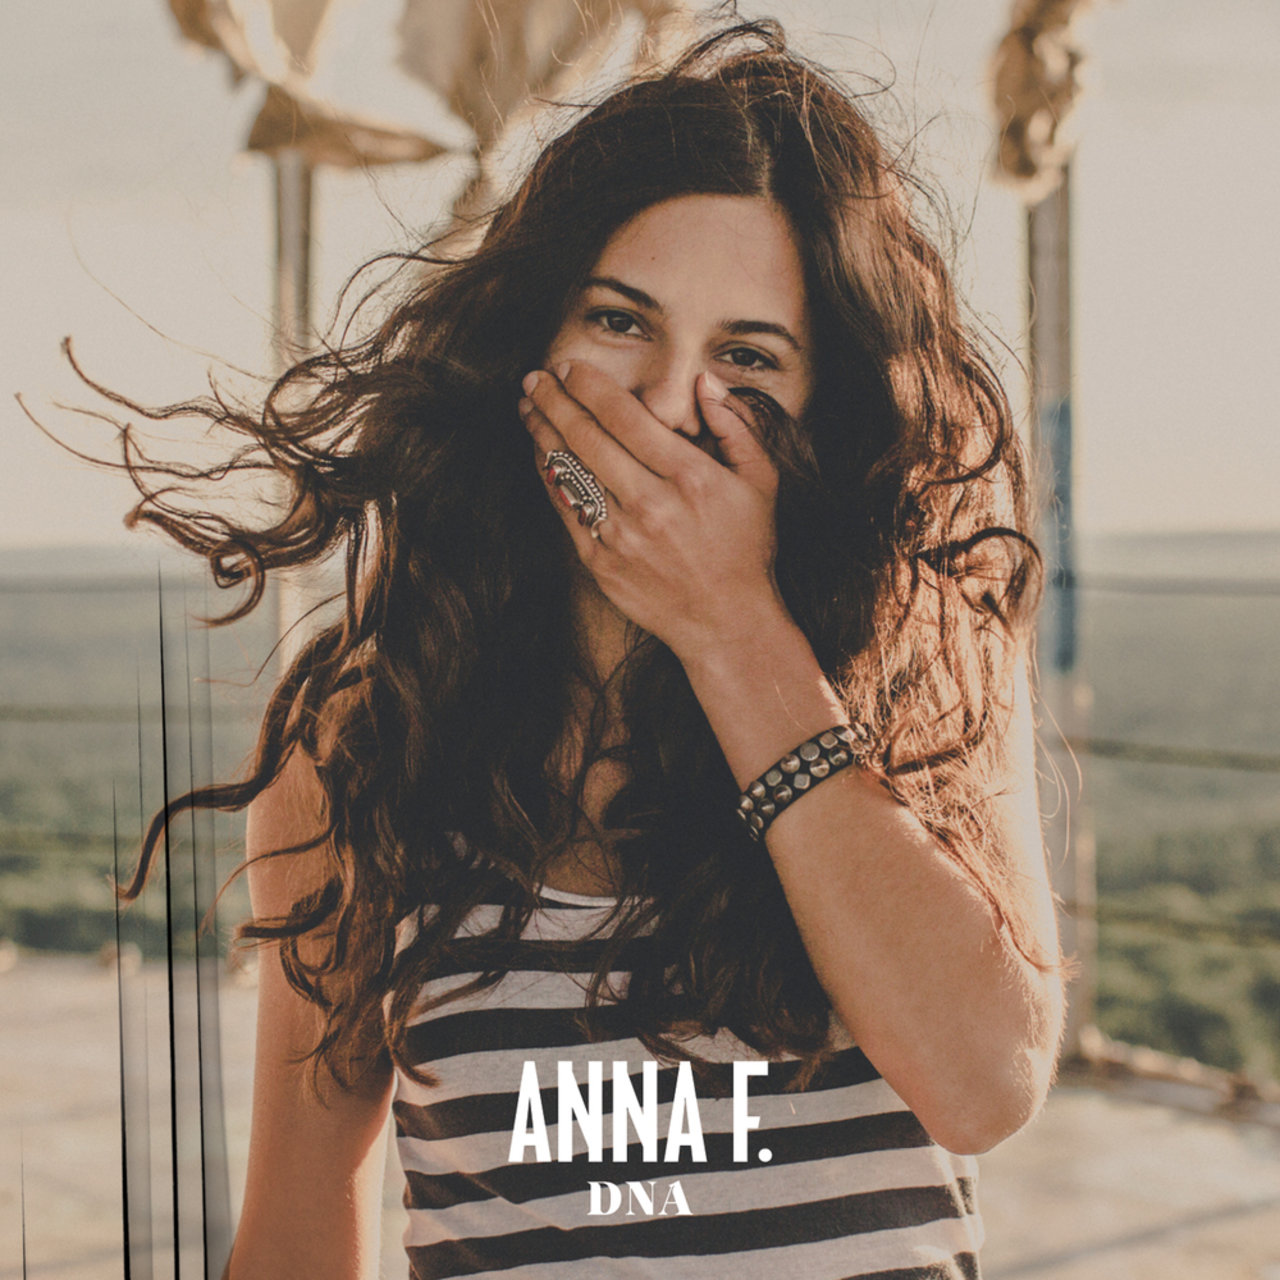 Anna F. DNA cover artwork